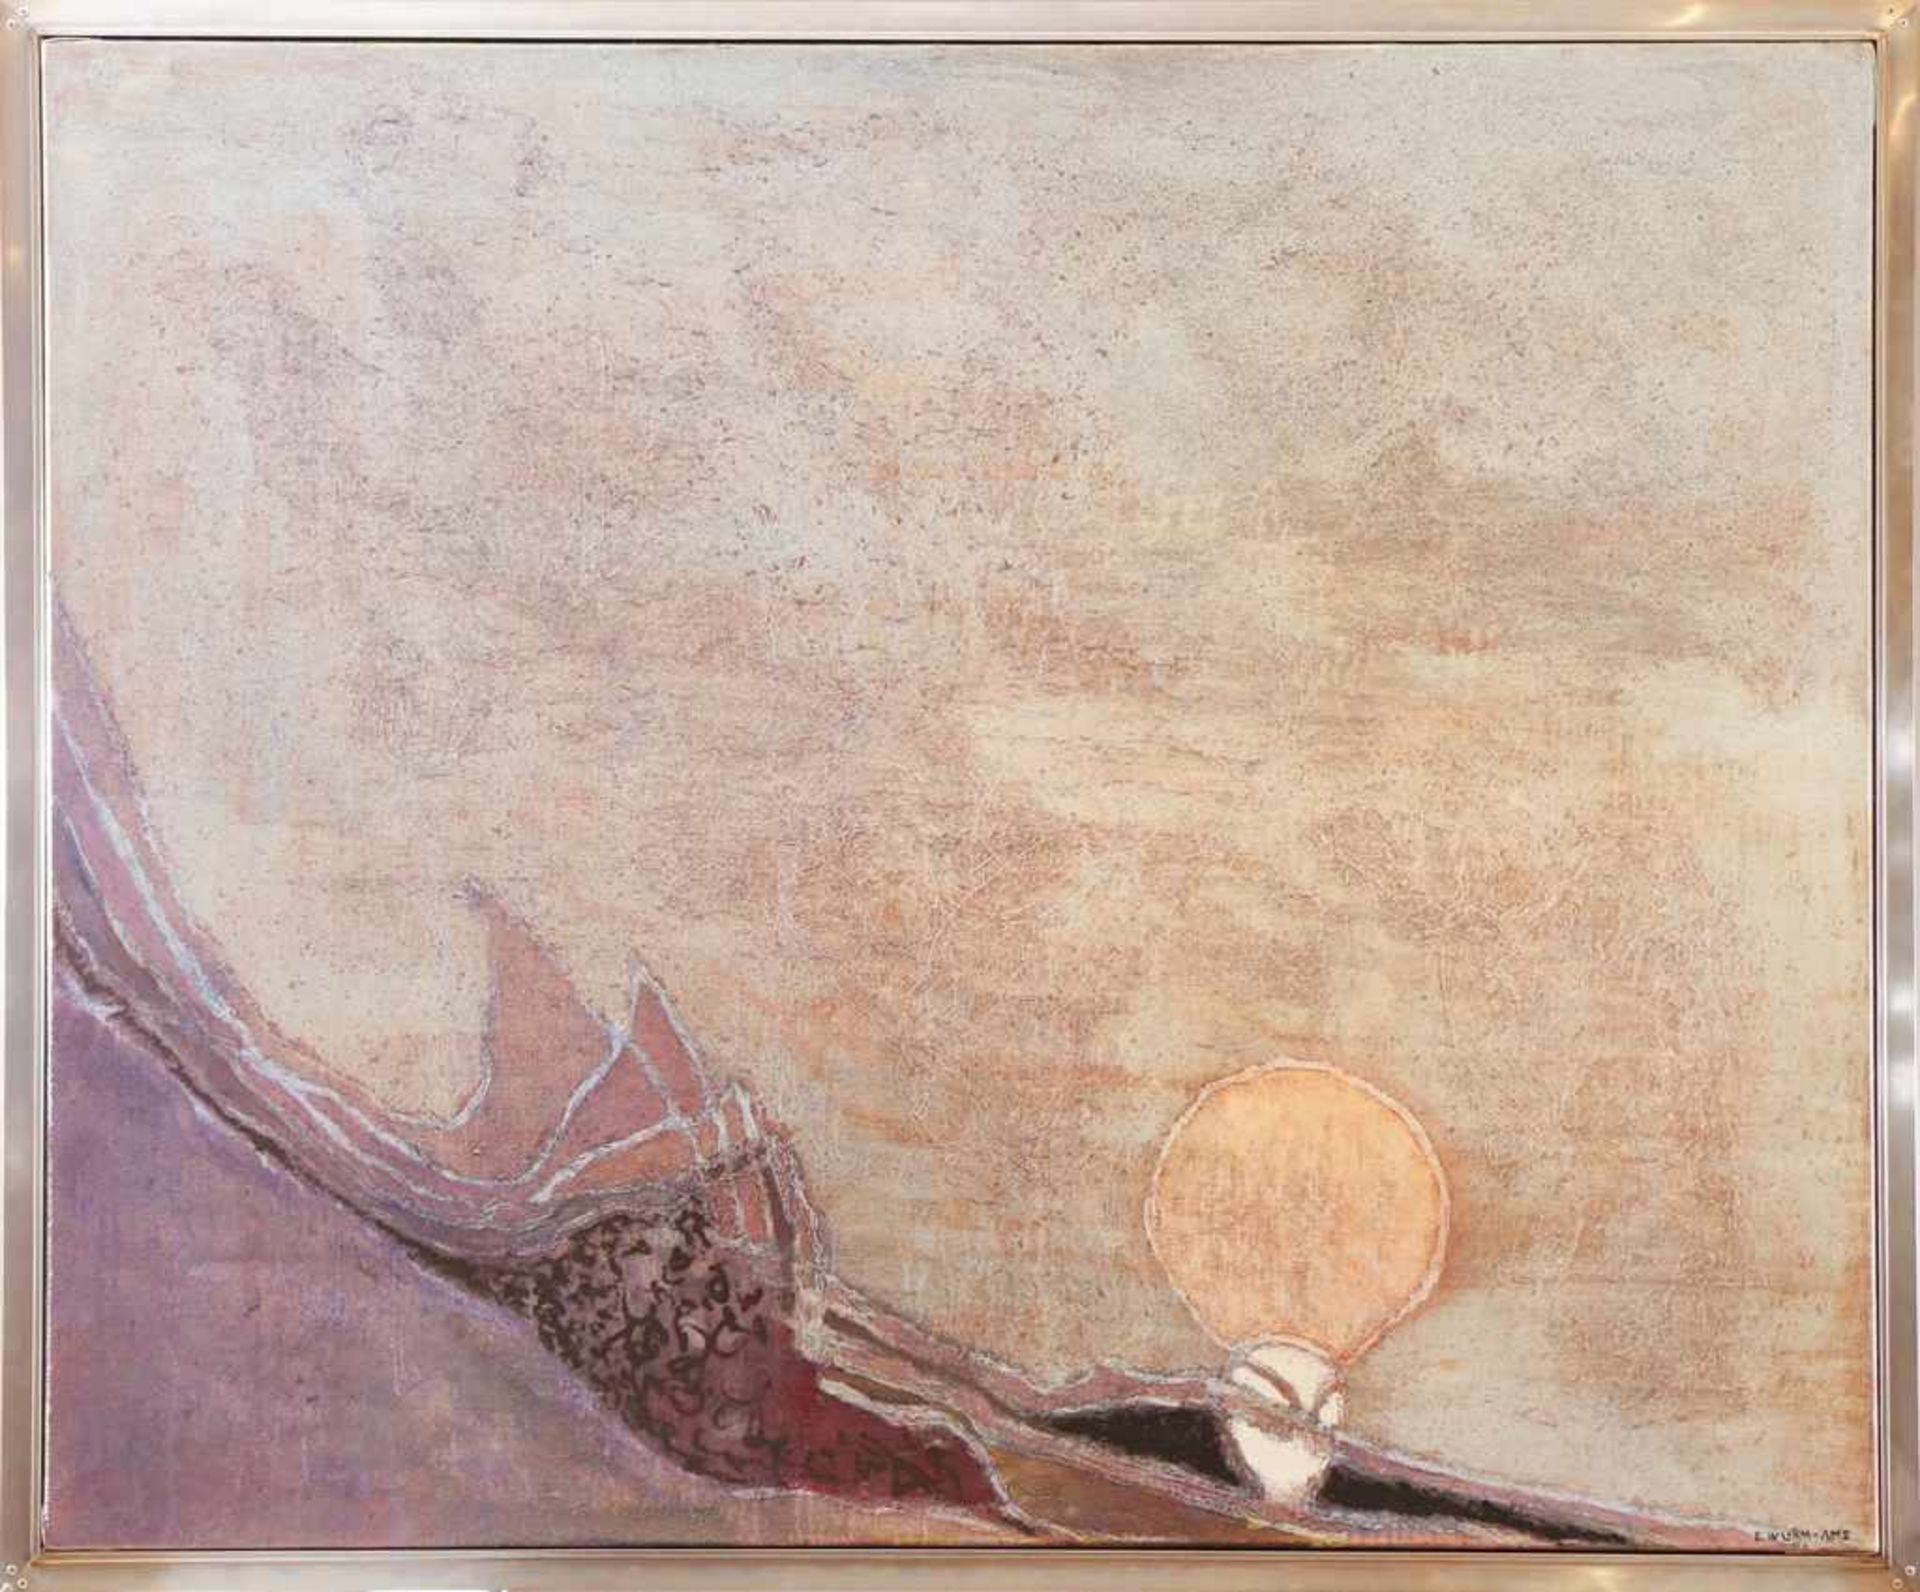 ERWIN WURM-AMS (geb. 1941 Niederösterreich) Öl auf Leinwand, ¨Abstrakte Komposition¨, ca. 114x138cm,